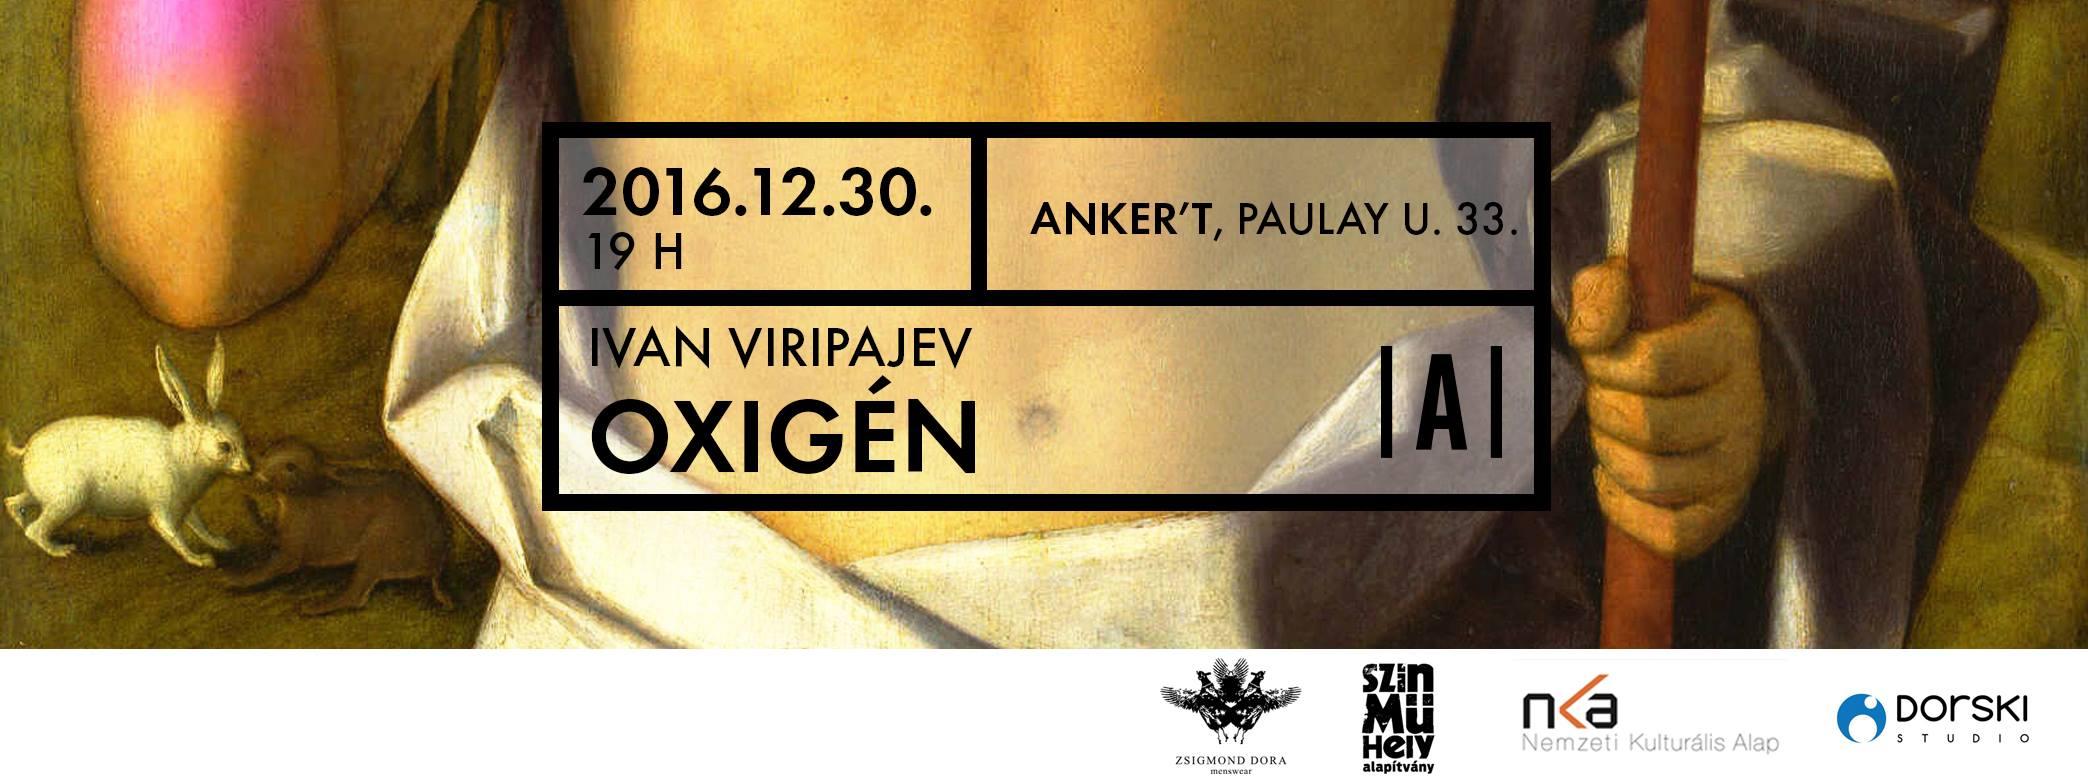 Oxygen By Ivan Vyripaev, Anker't, 30 December